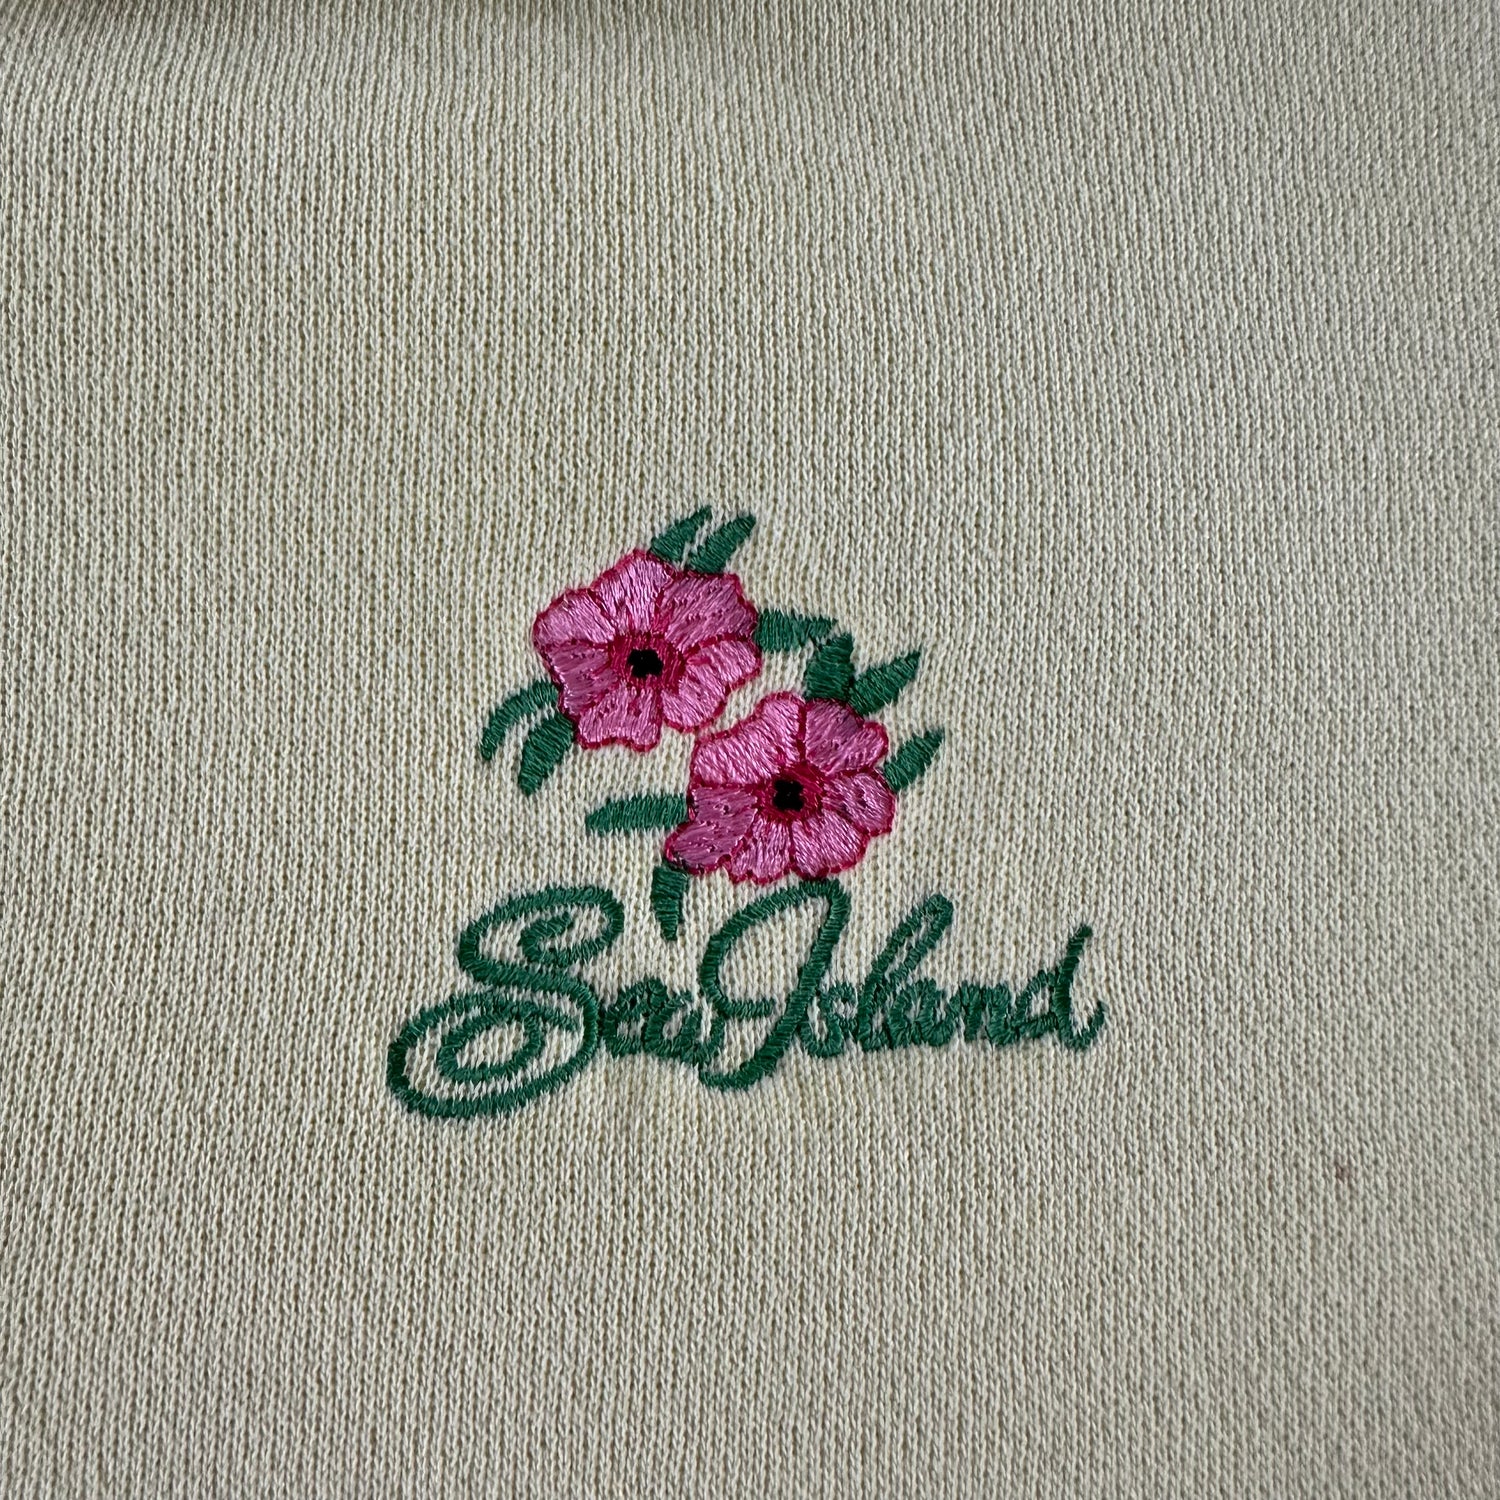 Vintage 1990s Sea Island Sweatshirt size Medium